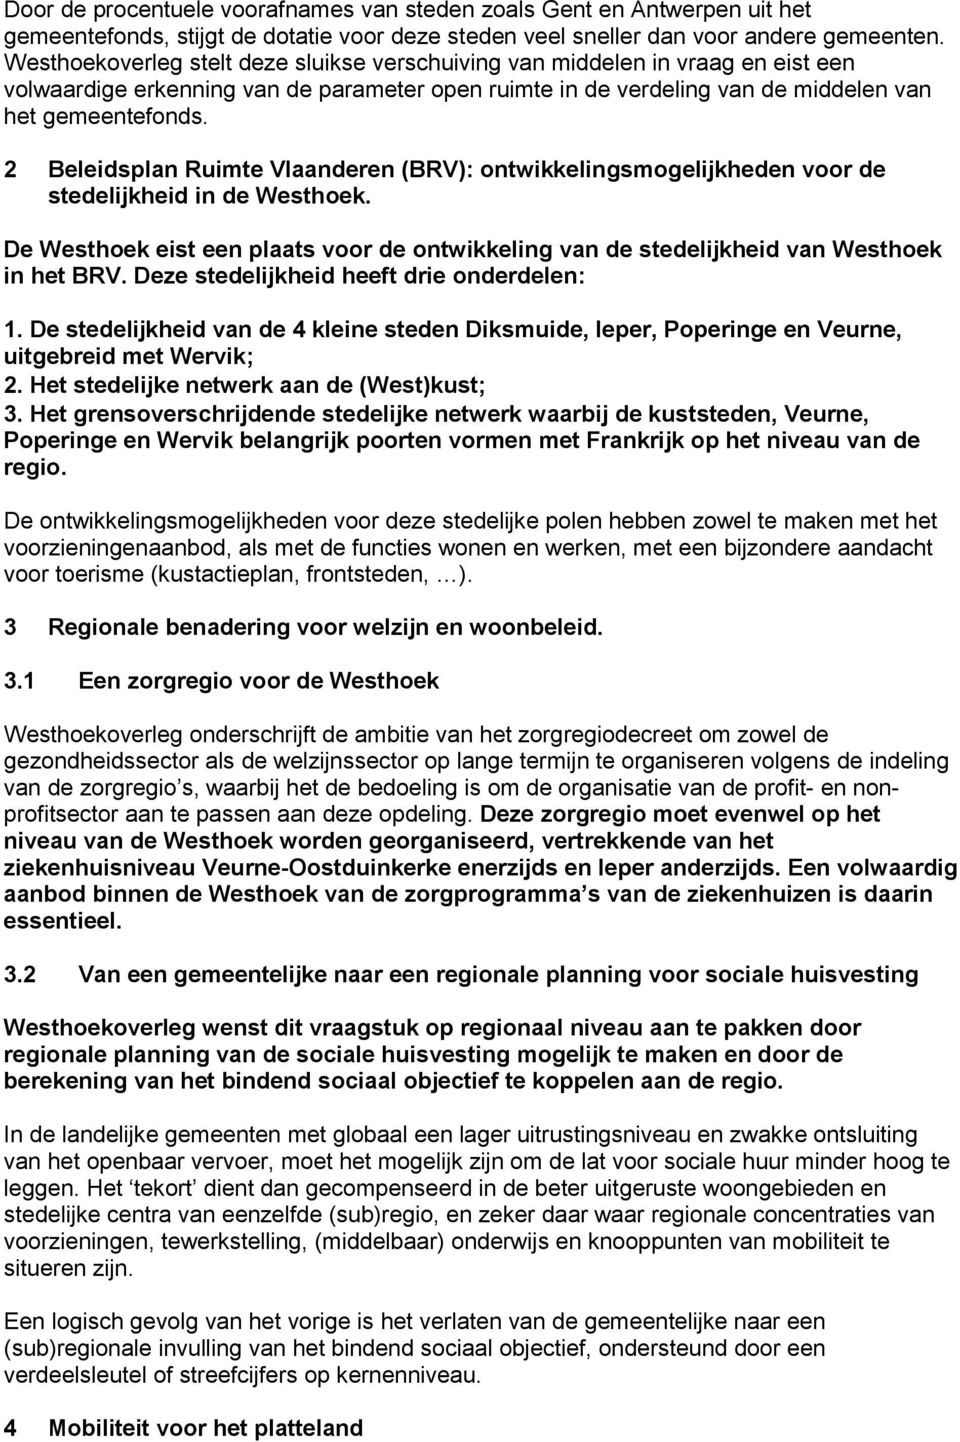 2 Beleidsplan Ruimte Vlaanderen (BRV): ontwikkelingsmogelijkheden voor de stedelijkheid in de Westhoek. De Westhoek eist een plaats voor de ontwikkeling van de stedelijkheid van Westhoek in het BRV.